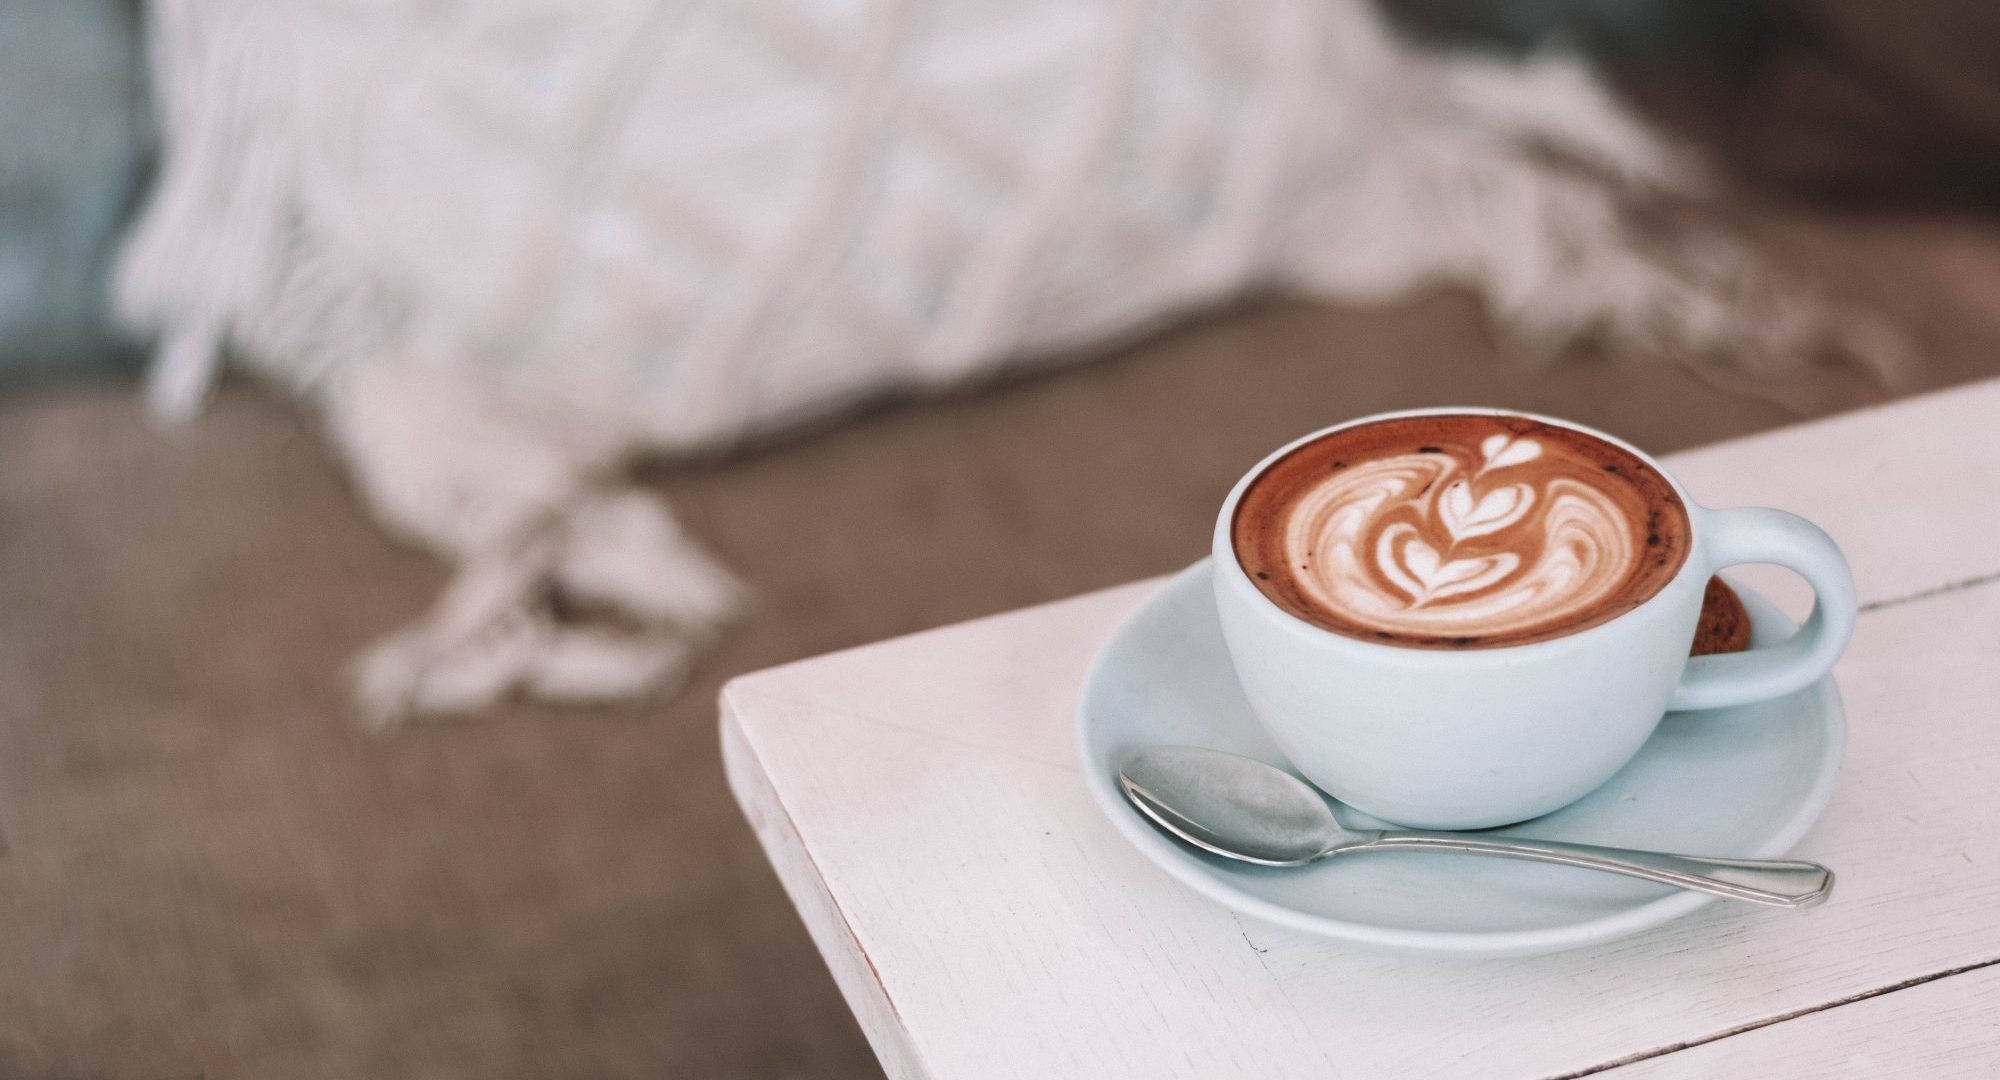 6 μύθοι για τον καφέ που ήρθε η ώρα να καταρρίψουμε Ξέχνα όσα ήξερες για την αγαπημένη σου πρωινή συνήθεια.